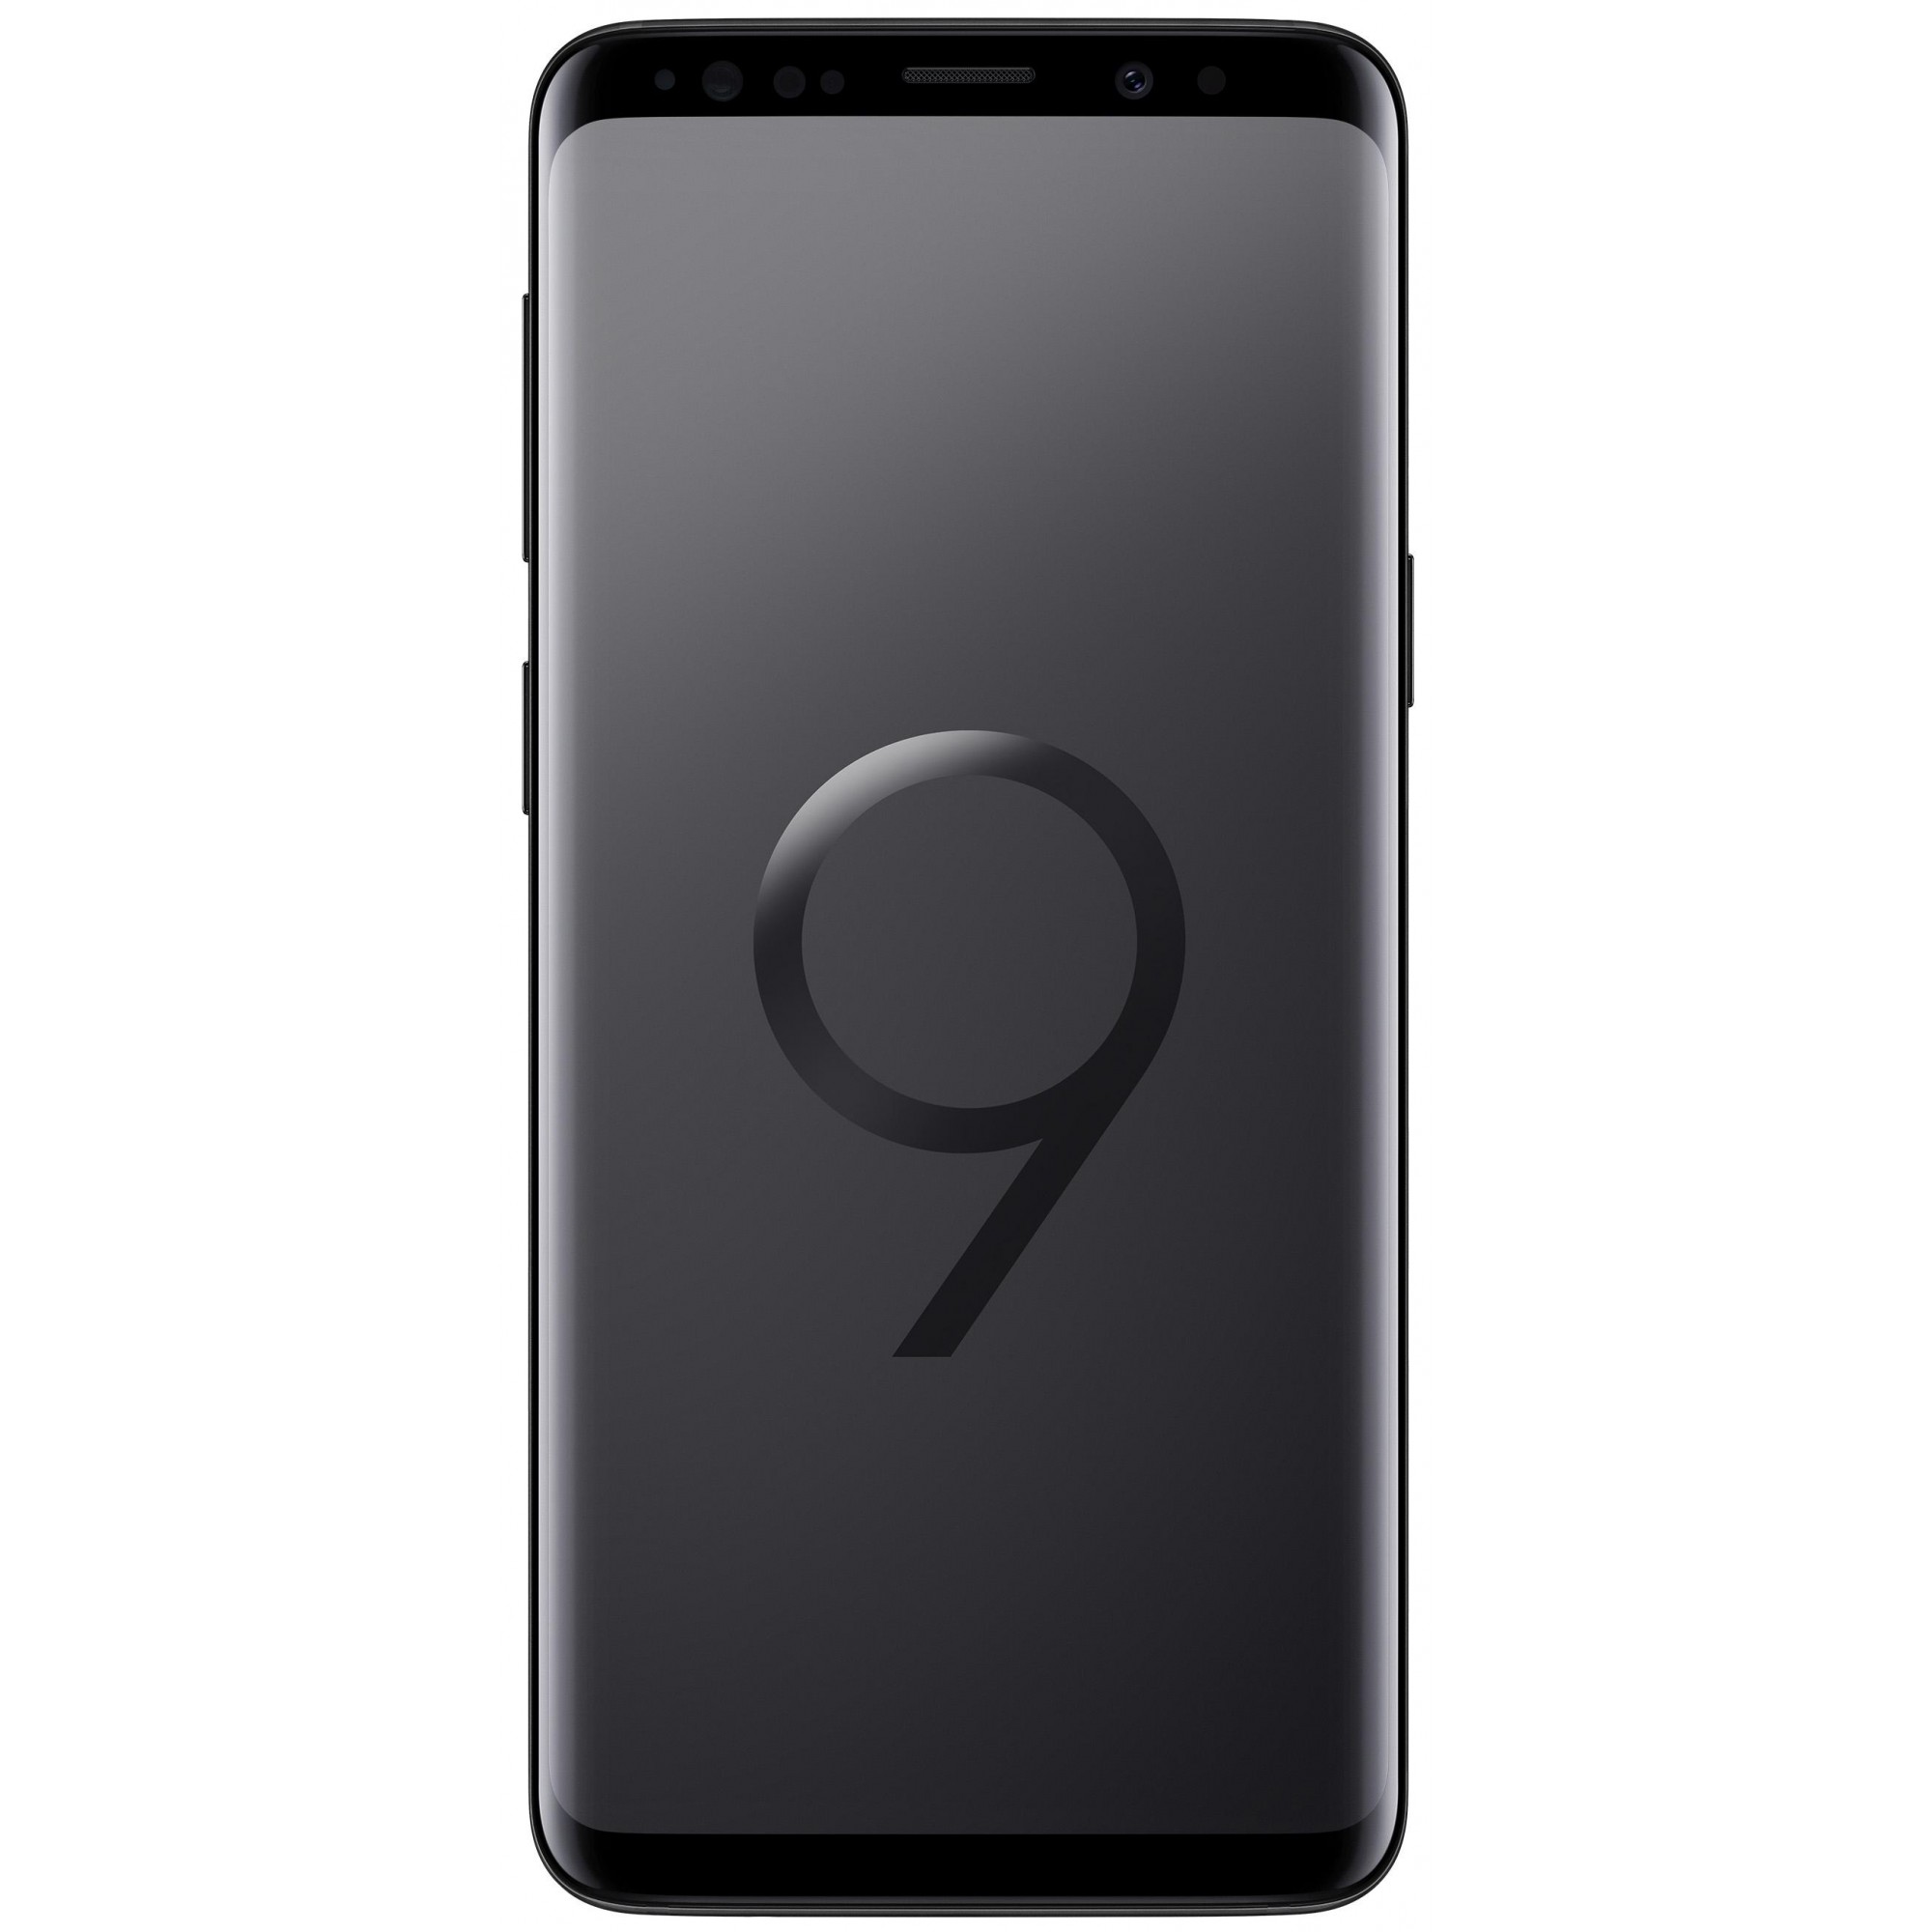 Samsung Galaxy S9 SM-G960 DS 64GB Black (SM-G960FZKD) - зображення 1